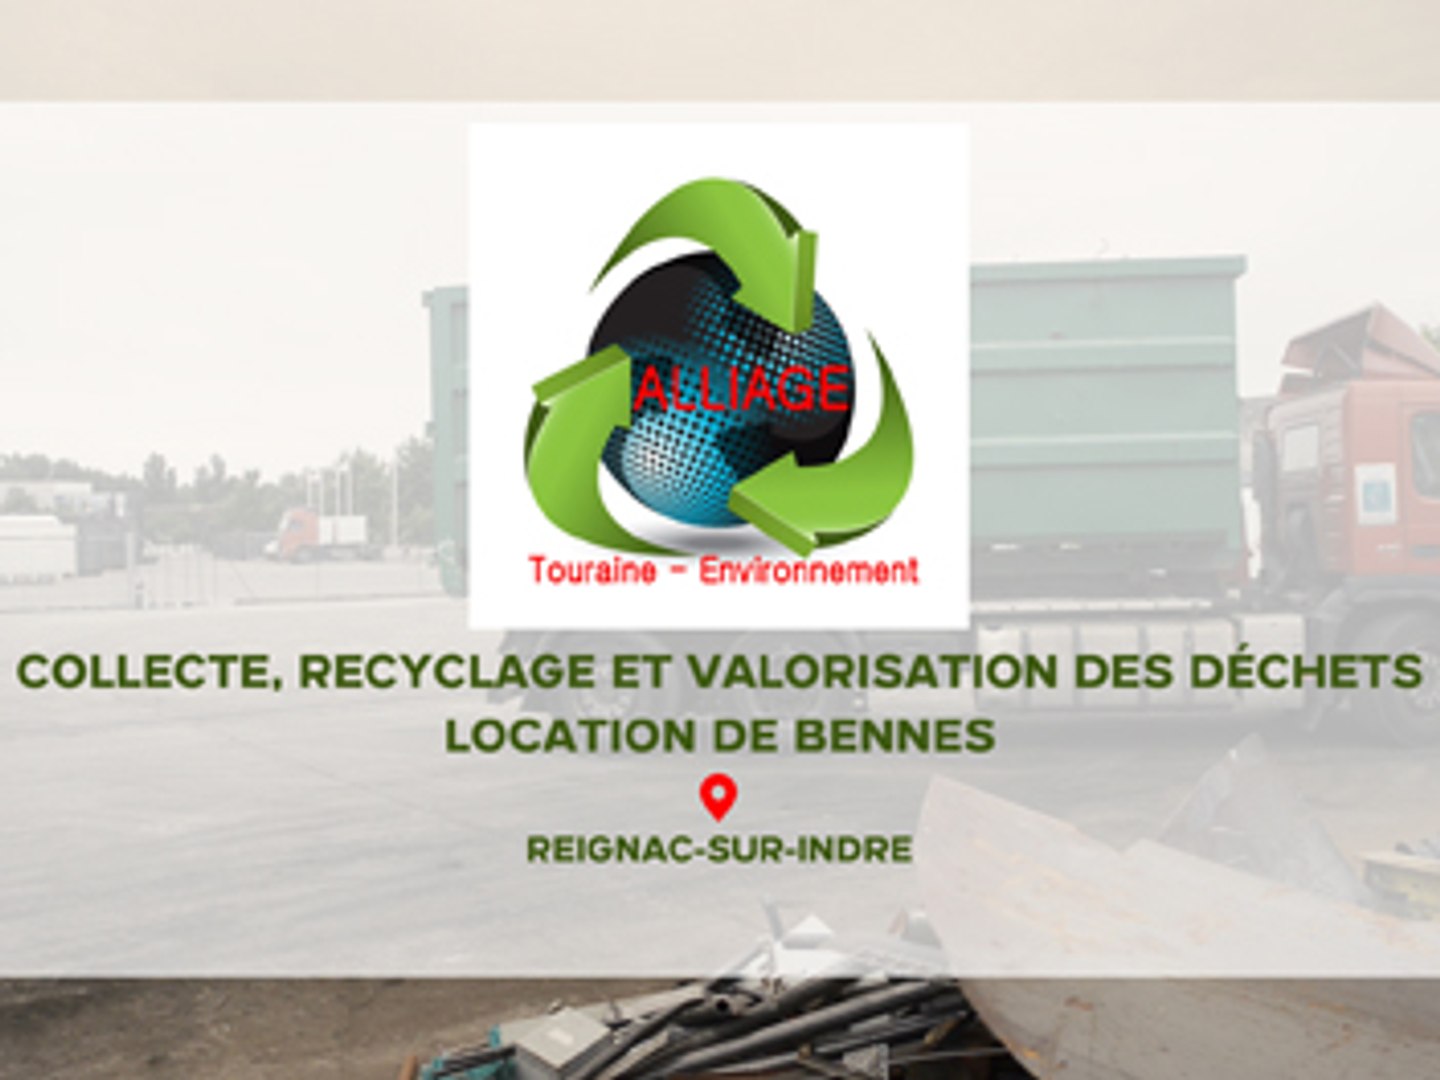 Alliage Touraine Environnement, collecte, recyclage des déchets à Reignac- sur-Indre. - Vidéo Dailymotion